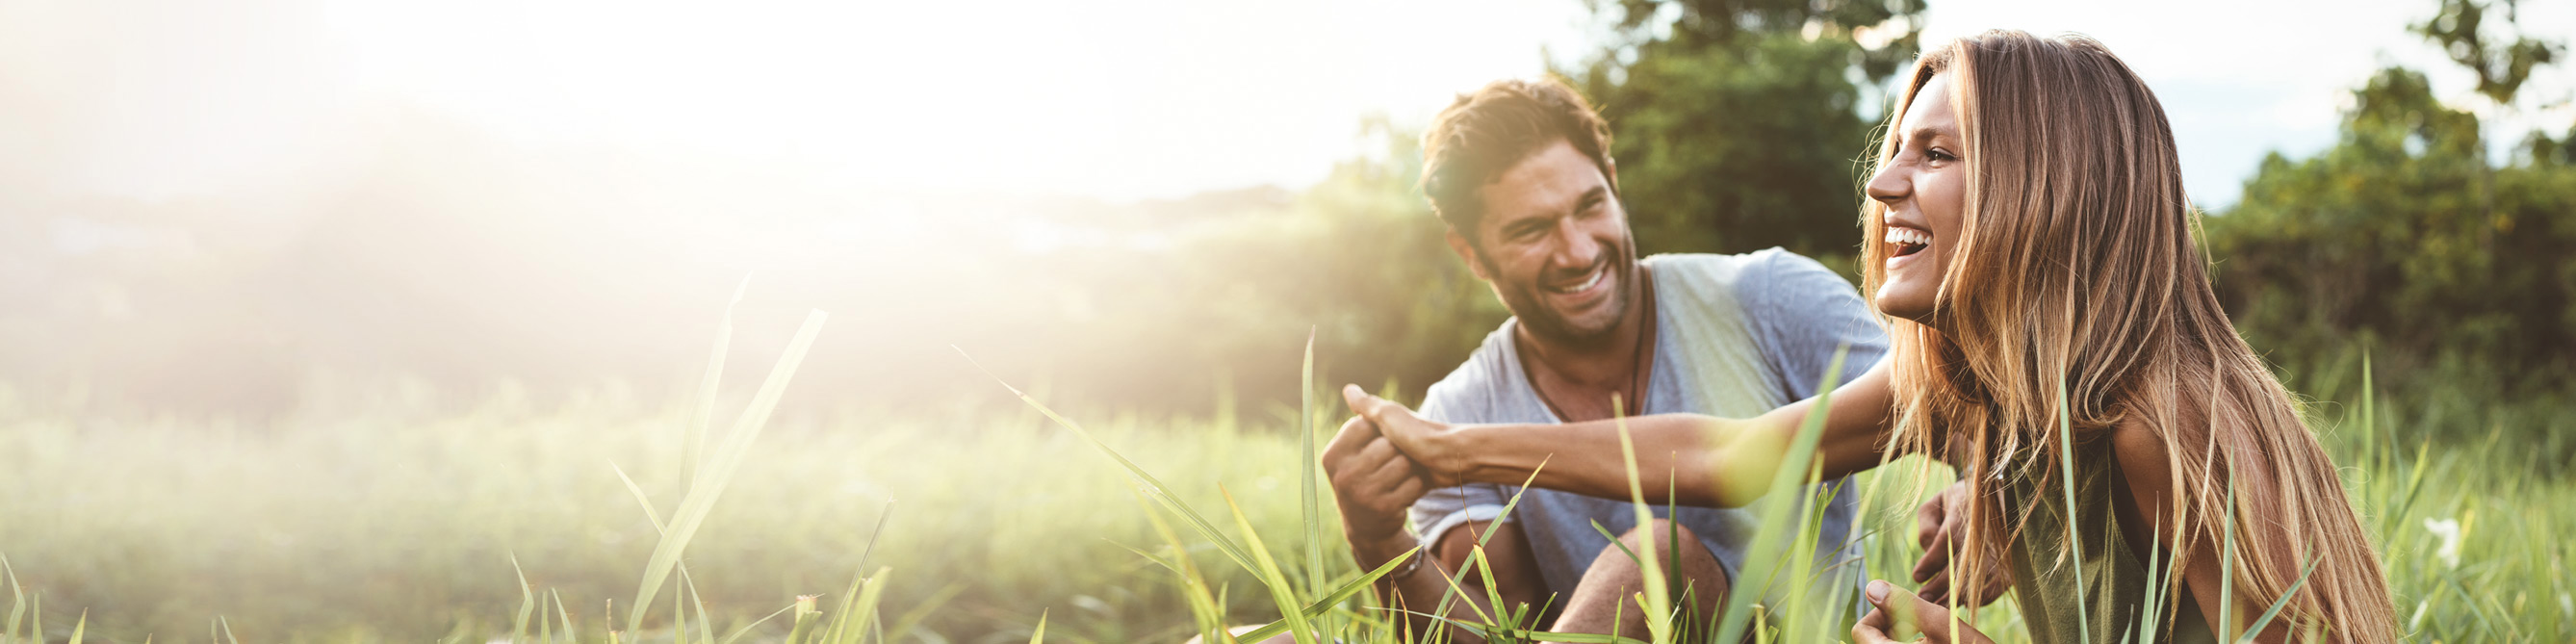 Ein junger Mann und eine junge Frau sitzen im Gras und lachen sich an.